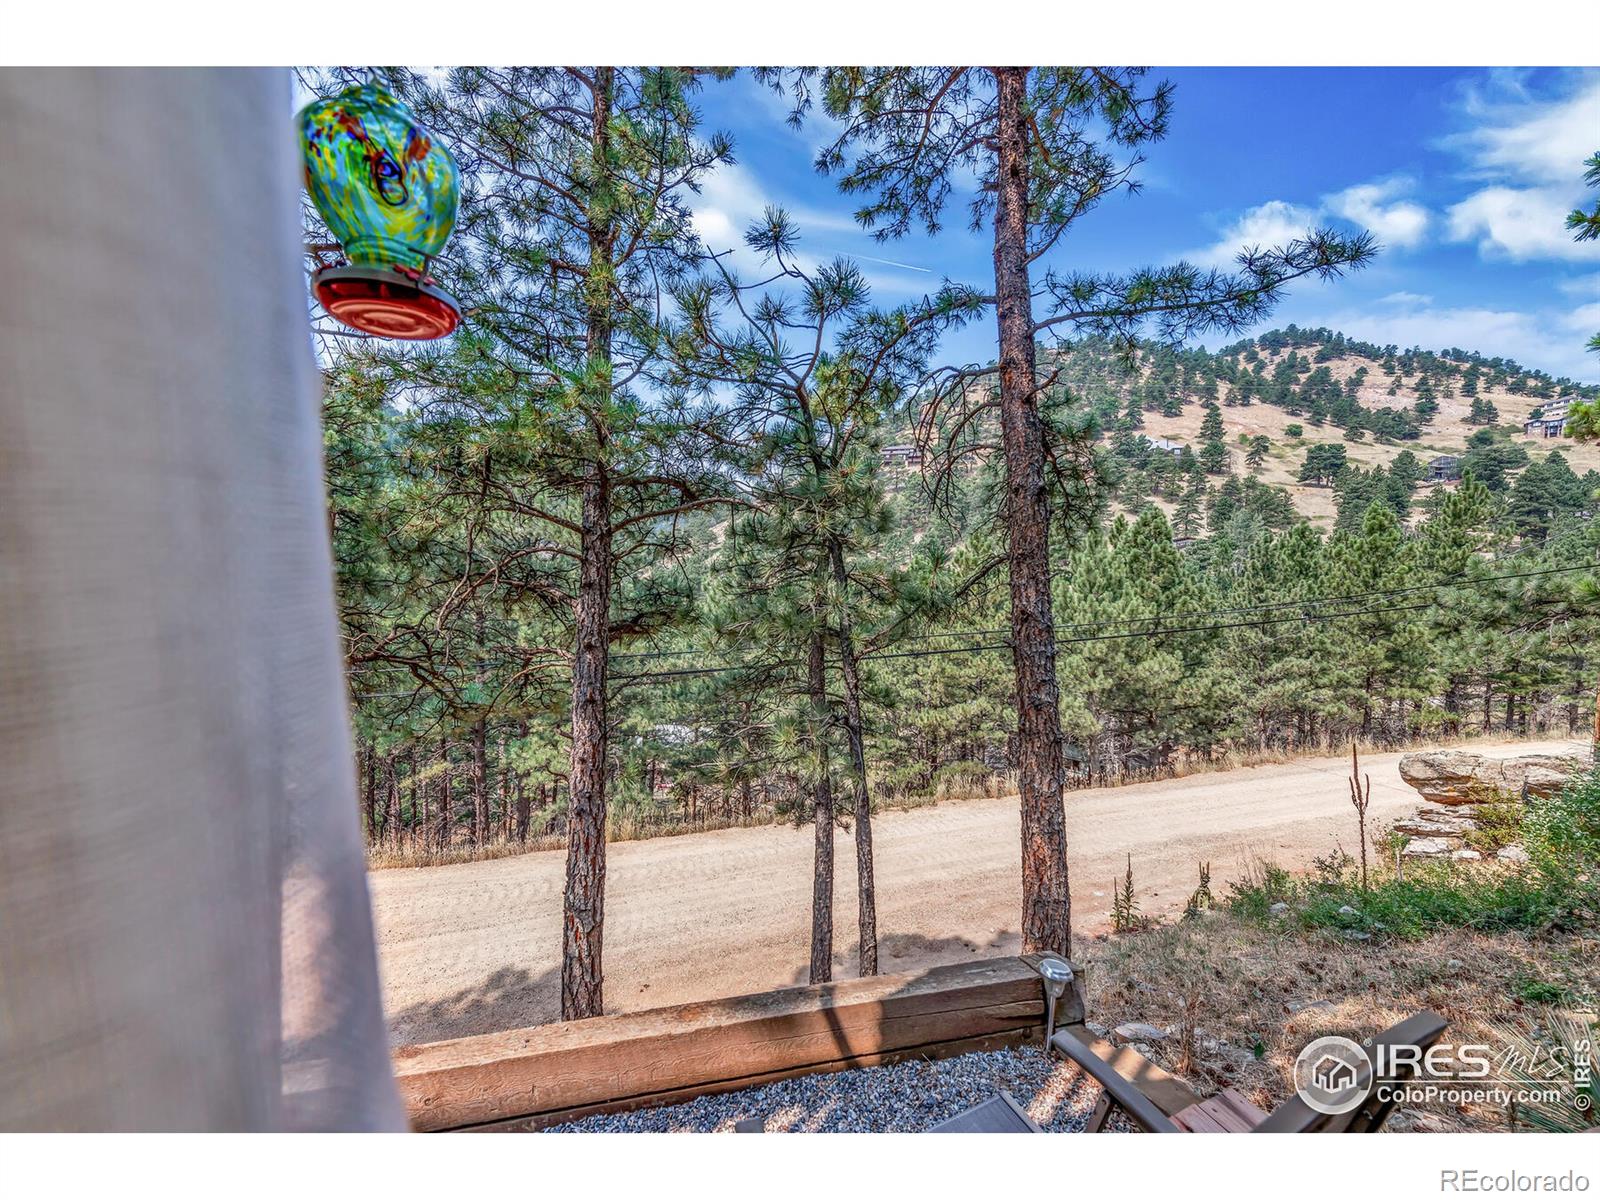 MLS Image #38 for 93  pine needle road,boulder, Colorado